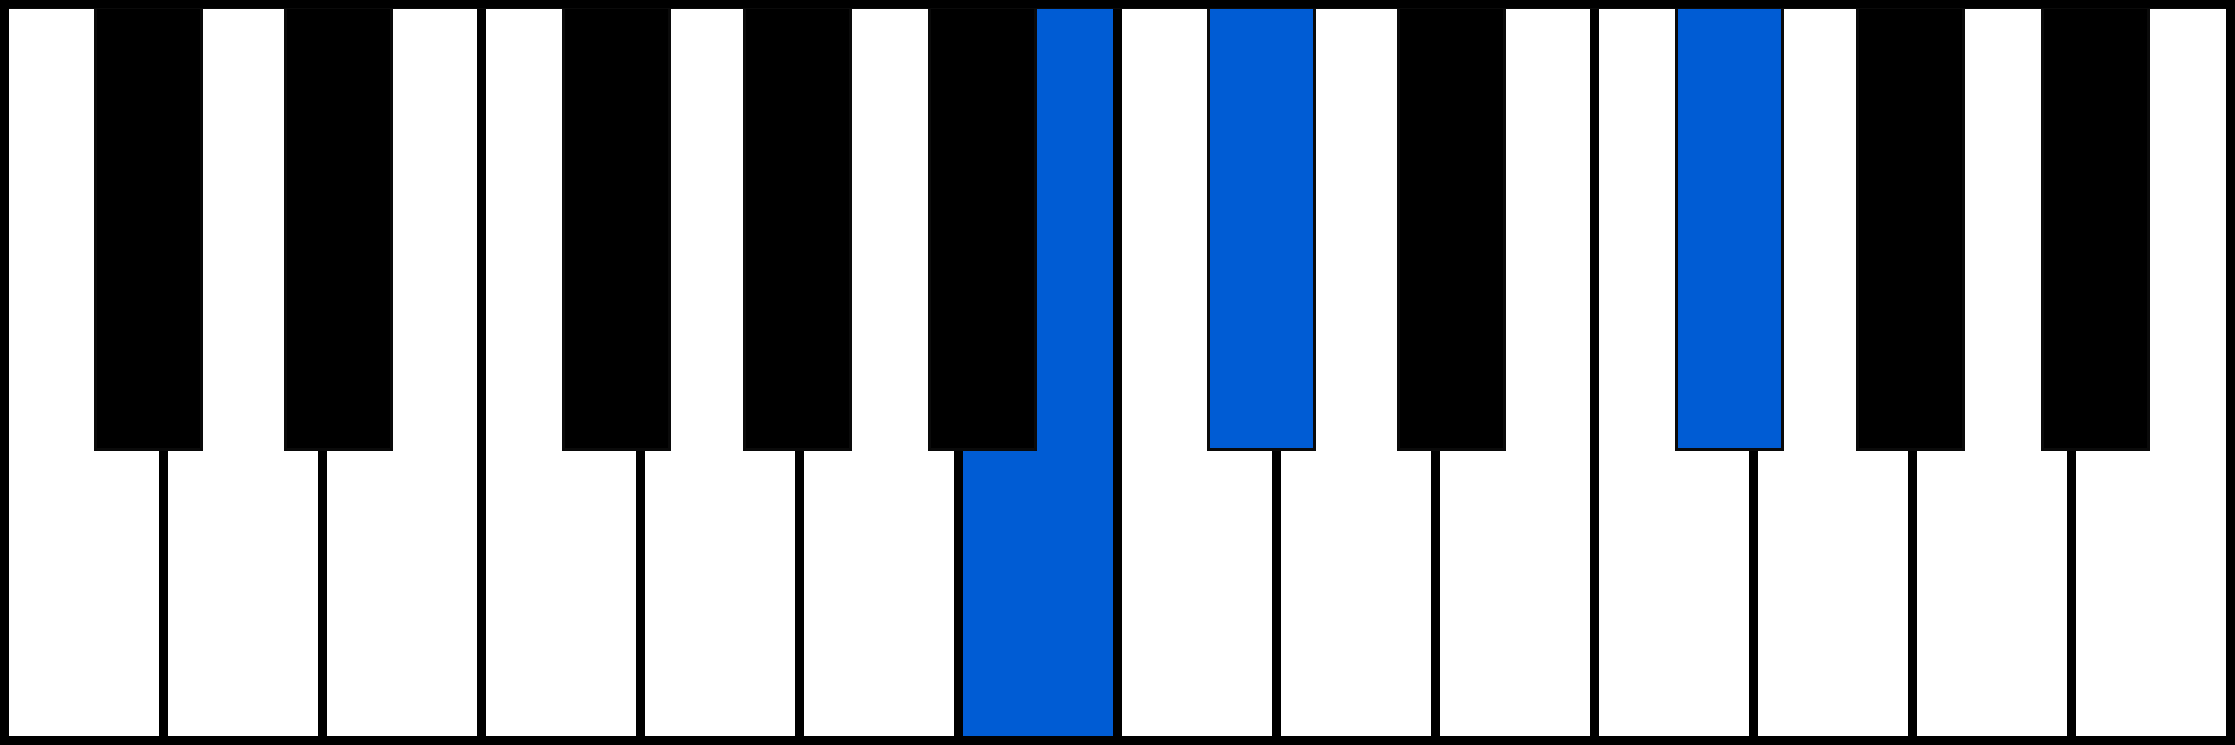 Hsus2 piano chord